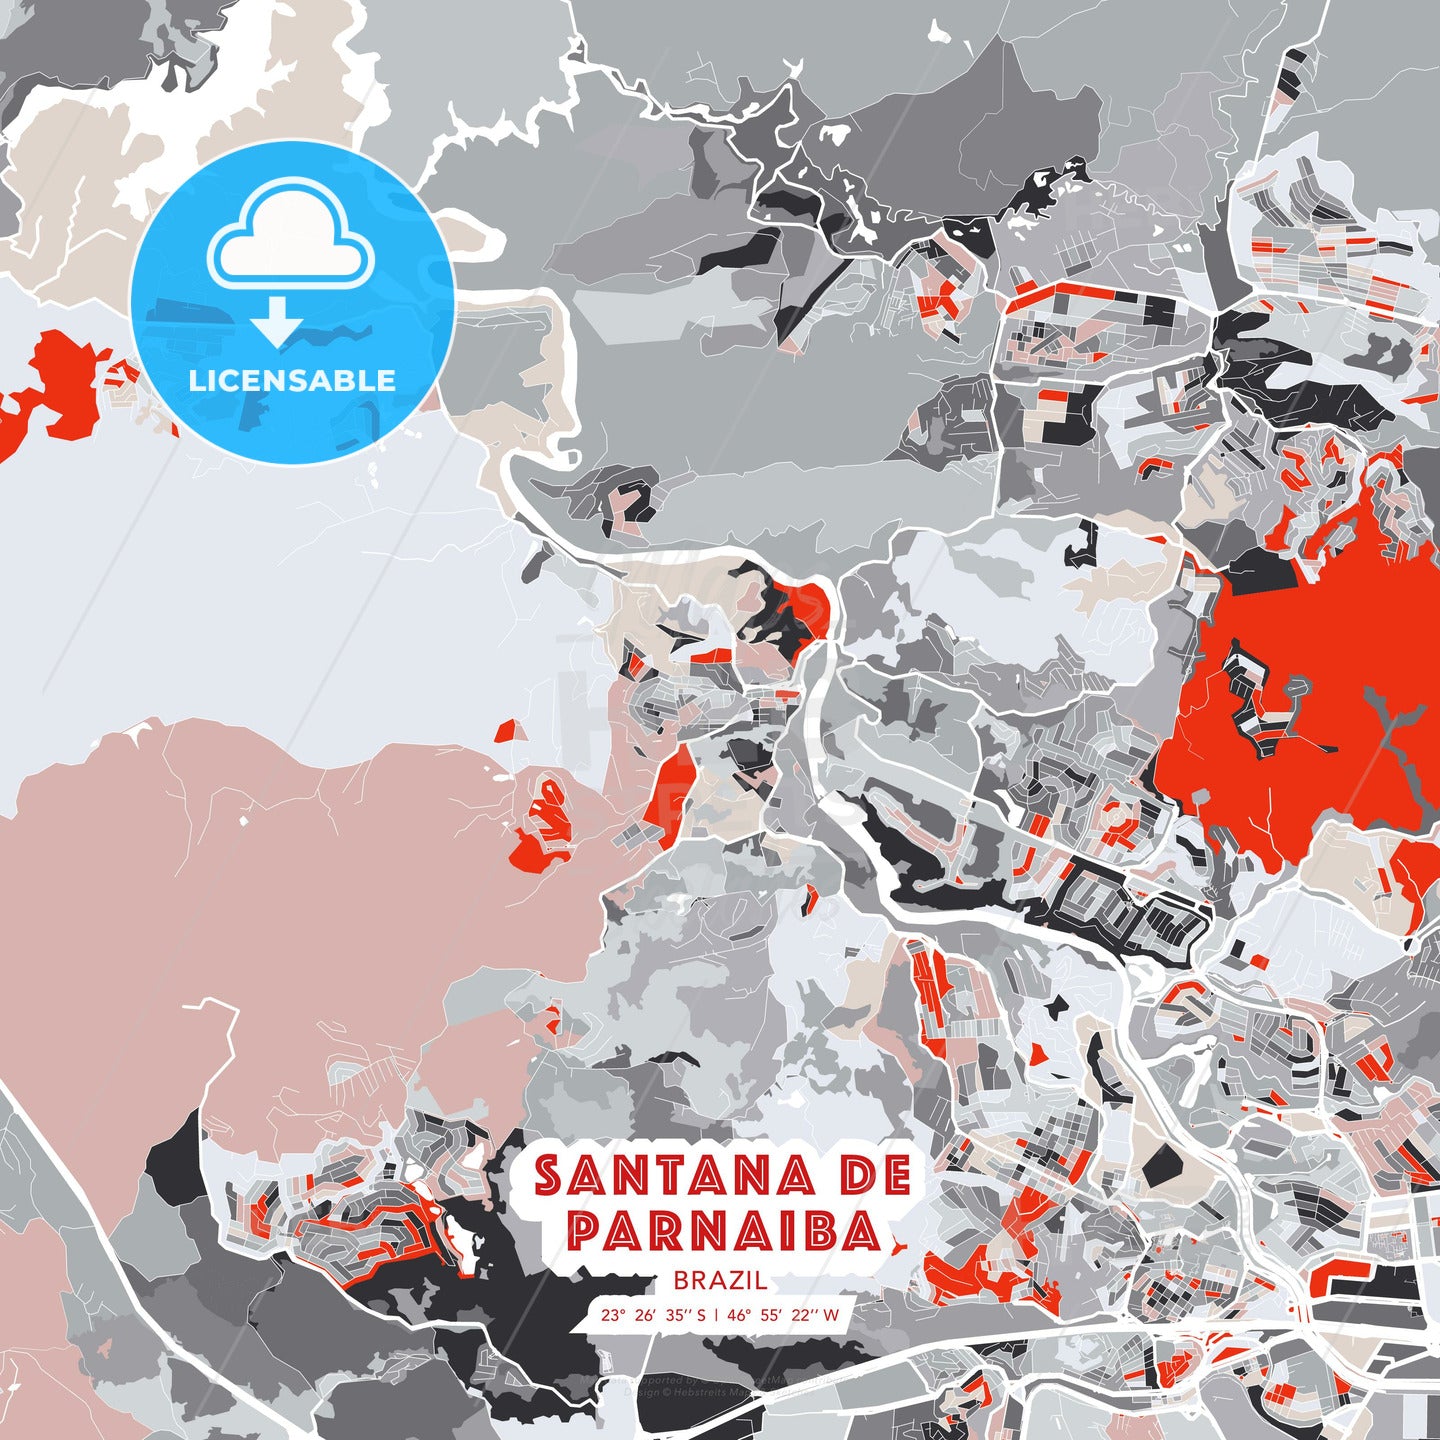 Santana de Parnaiba, Brazil, modern map - HEBSTREITS Sketches